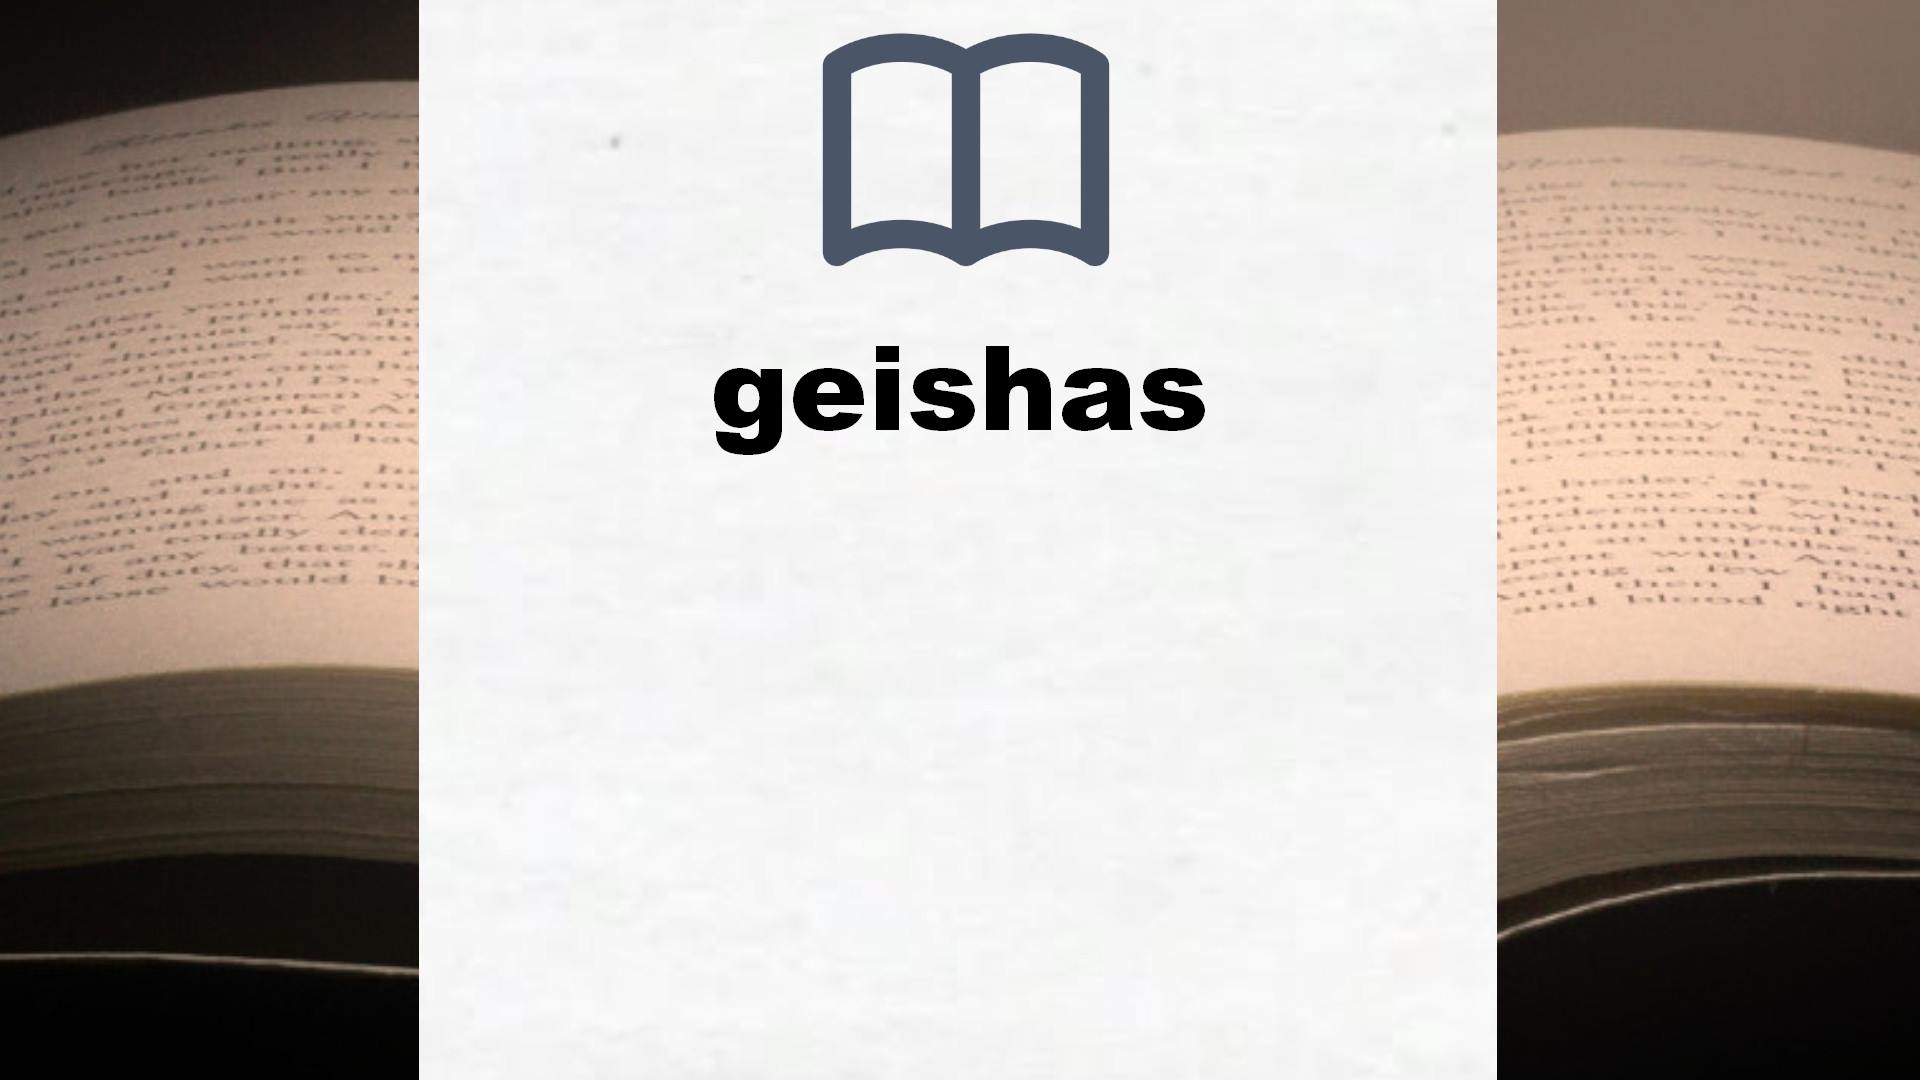 Libros sobre geishas